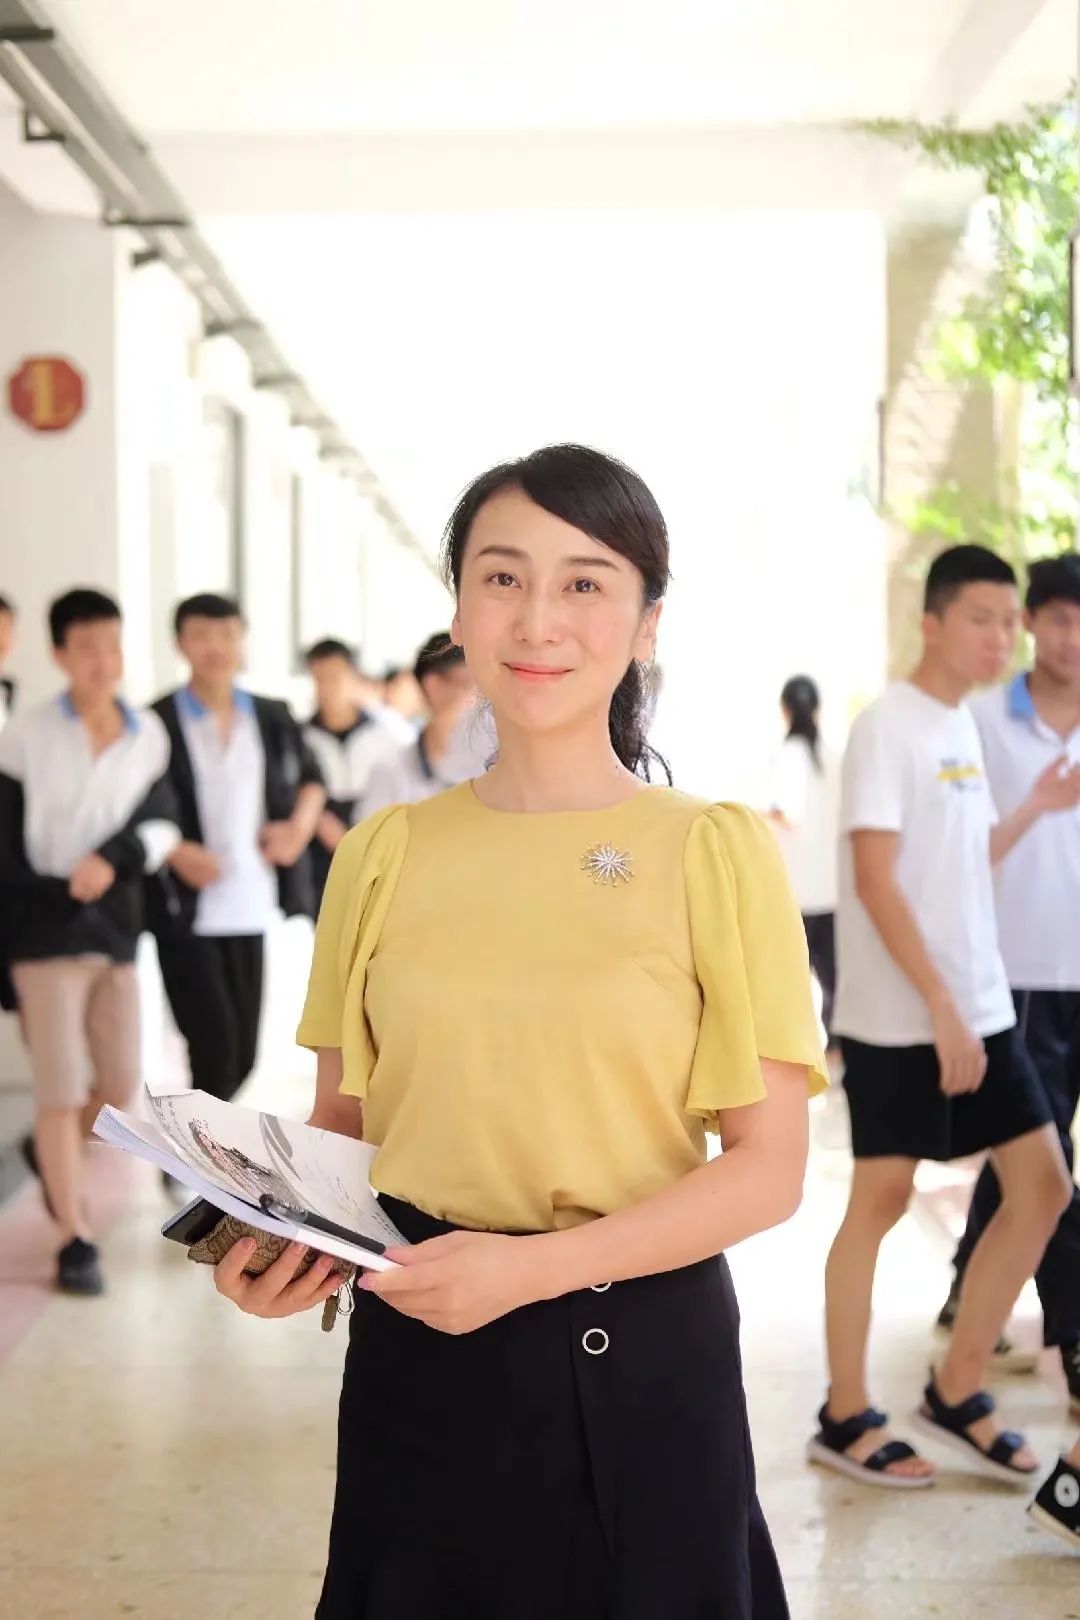 喜报 | 我校成功立项湖南省职业教育“楚怡”行动高水平教师队伍建设项目5项